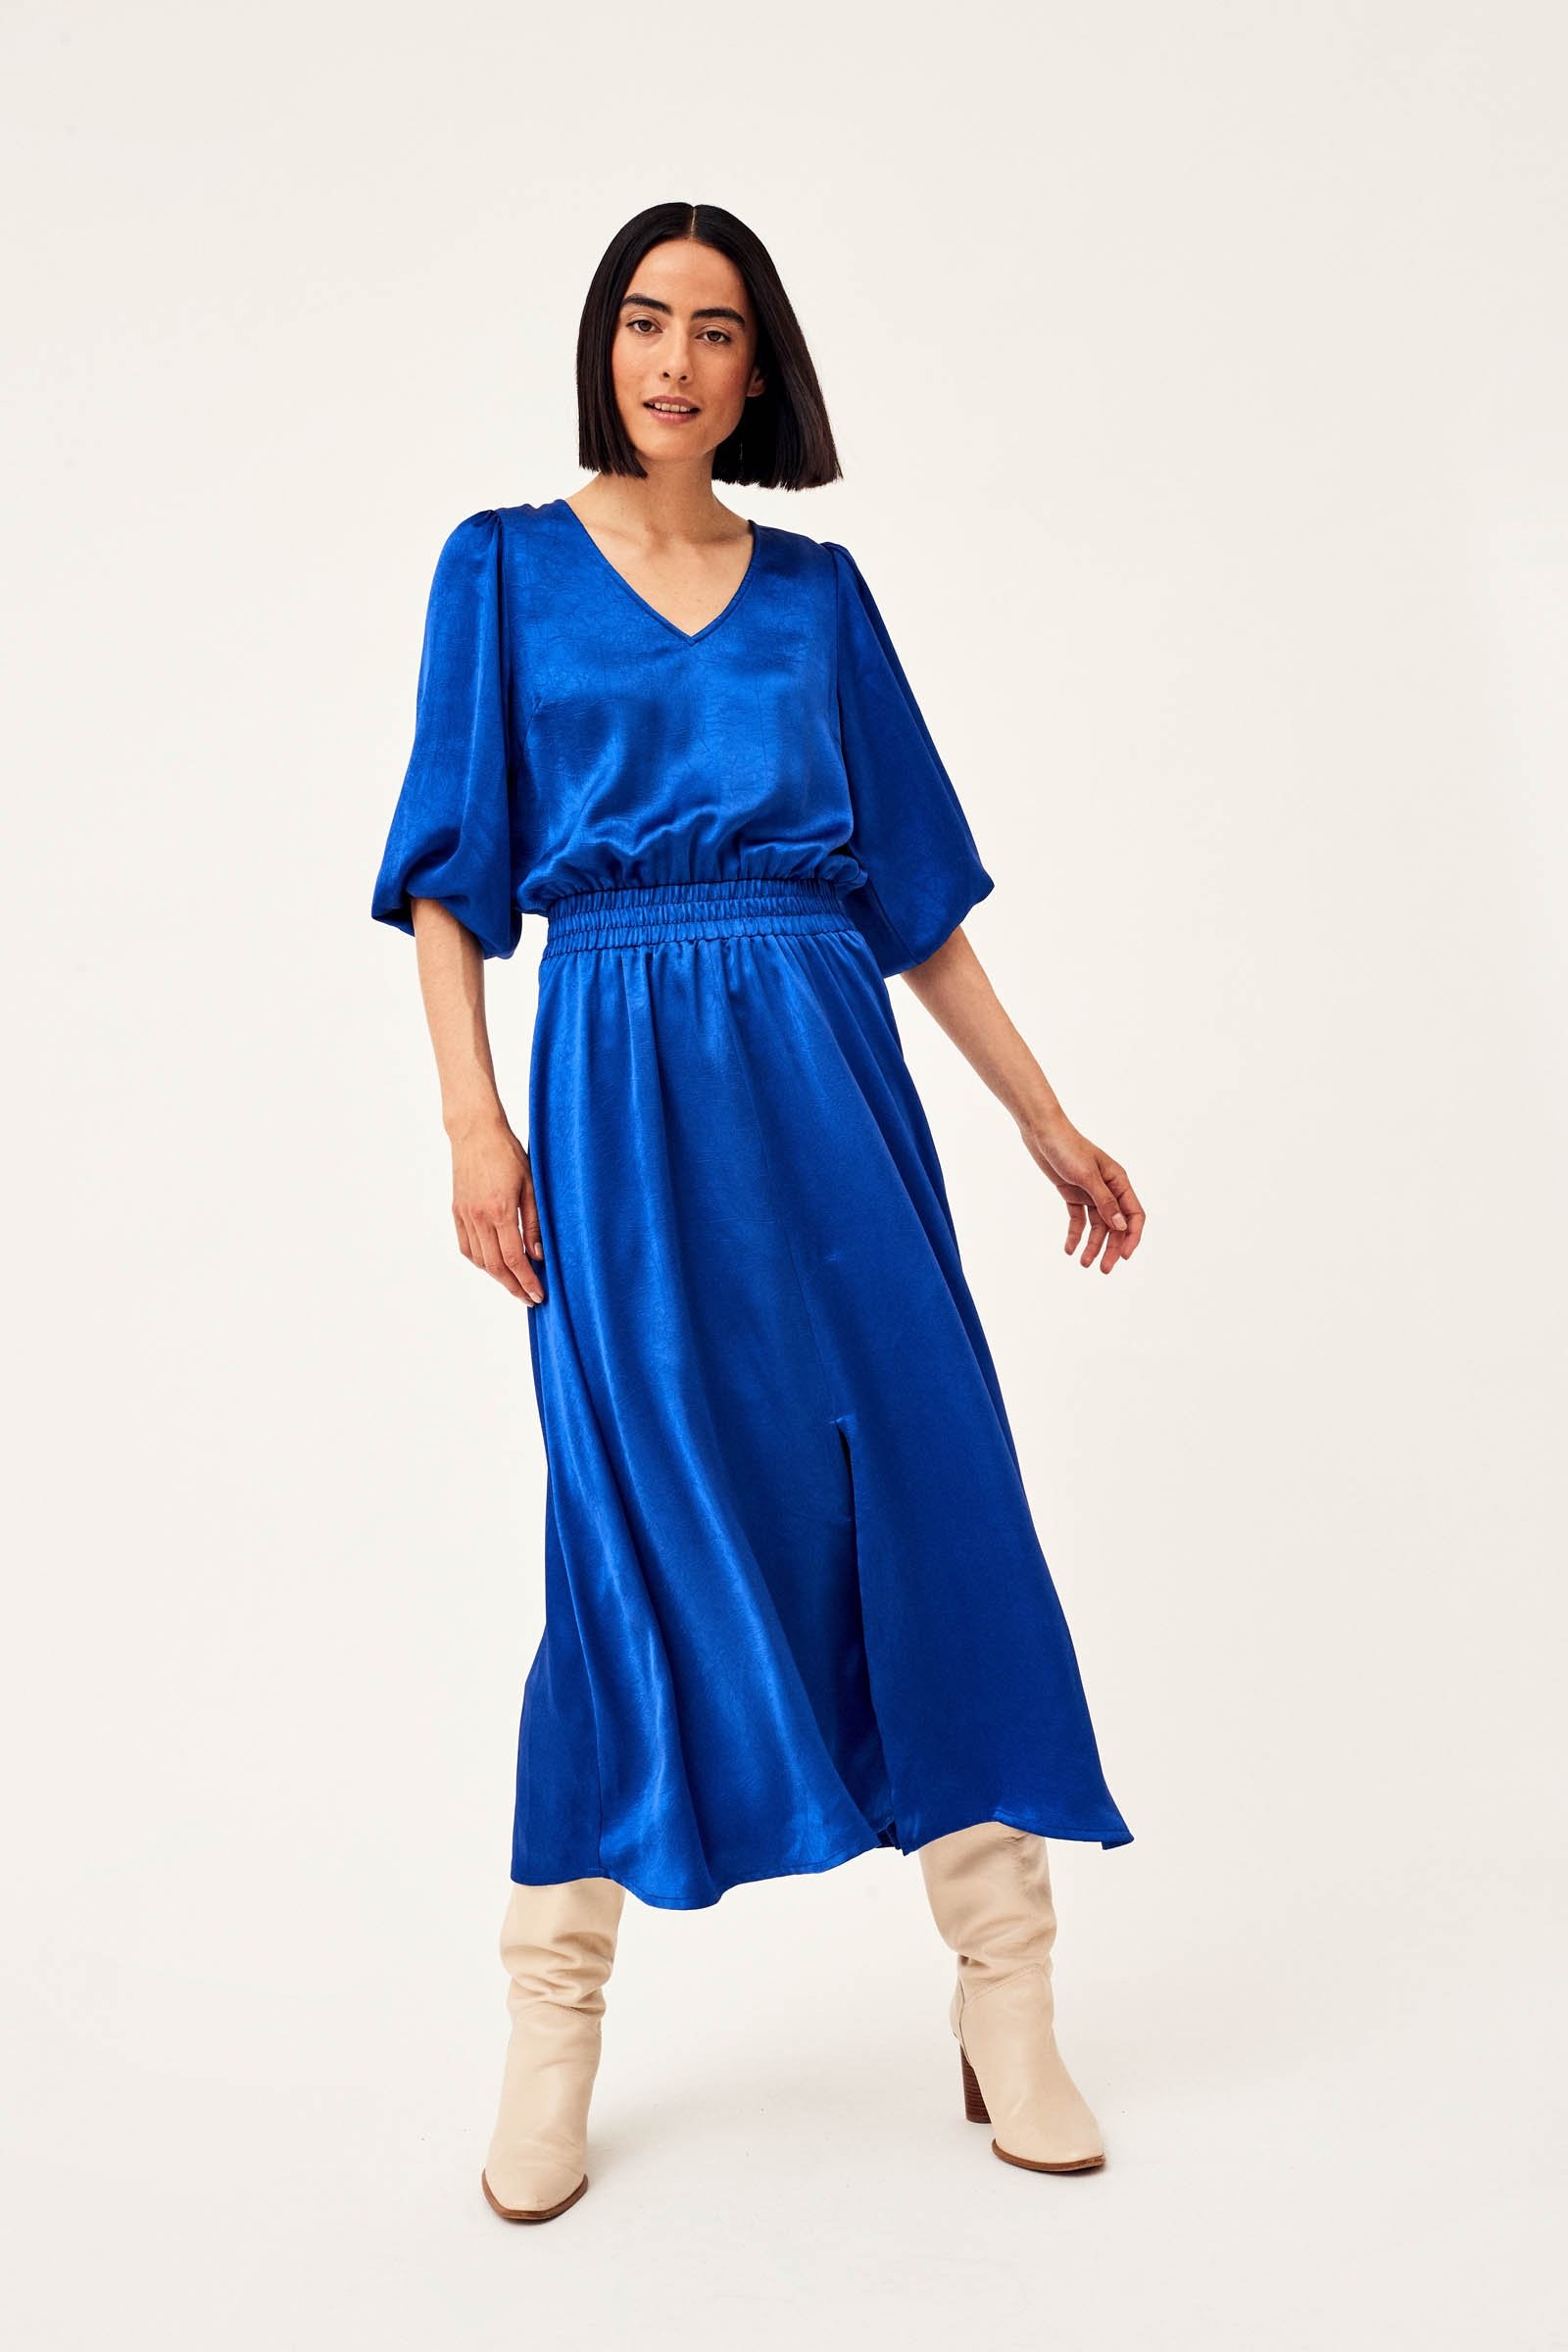 CKS Dames - WIMBLEDON - lange jurk - donkerblauw